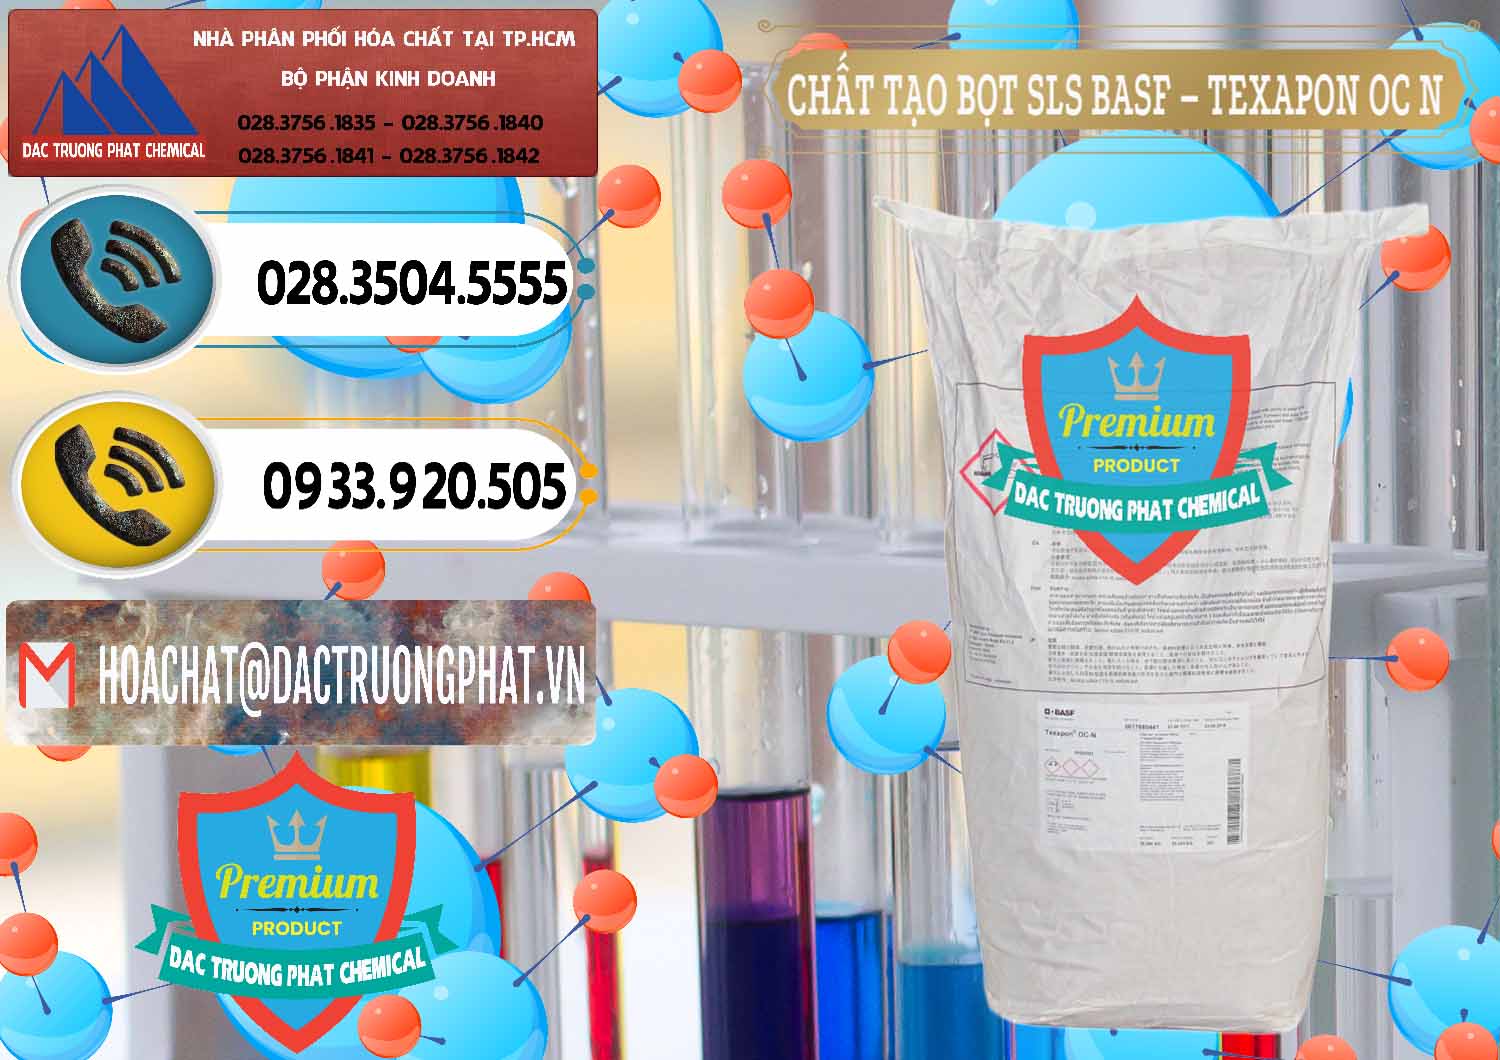 Cty chuyên nhập khẩu _ bán Chất Tạo Bọt SLS - Sodium Lauryl Sulfate BASF Texapon OC N - 0049 - Công ty phân phối ( nhập khẩu ) hóa chất tại TP.HCM - hoachatdetnhuom.vn